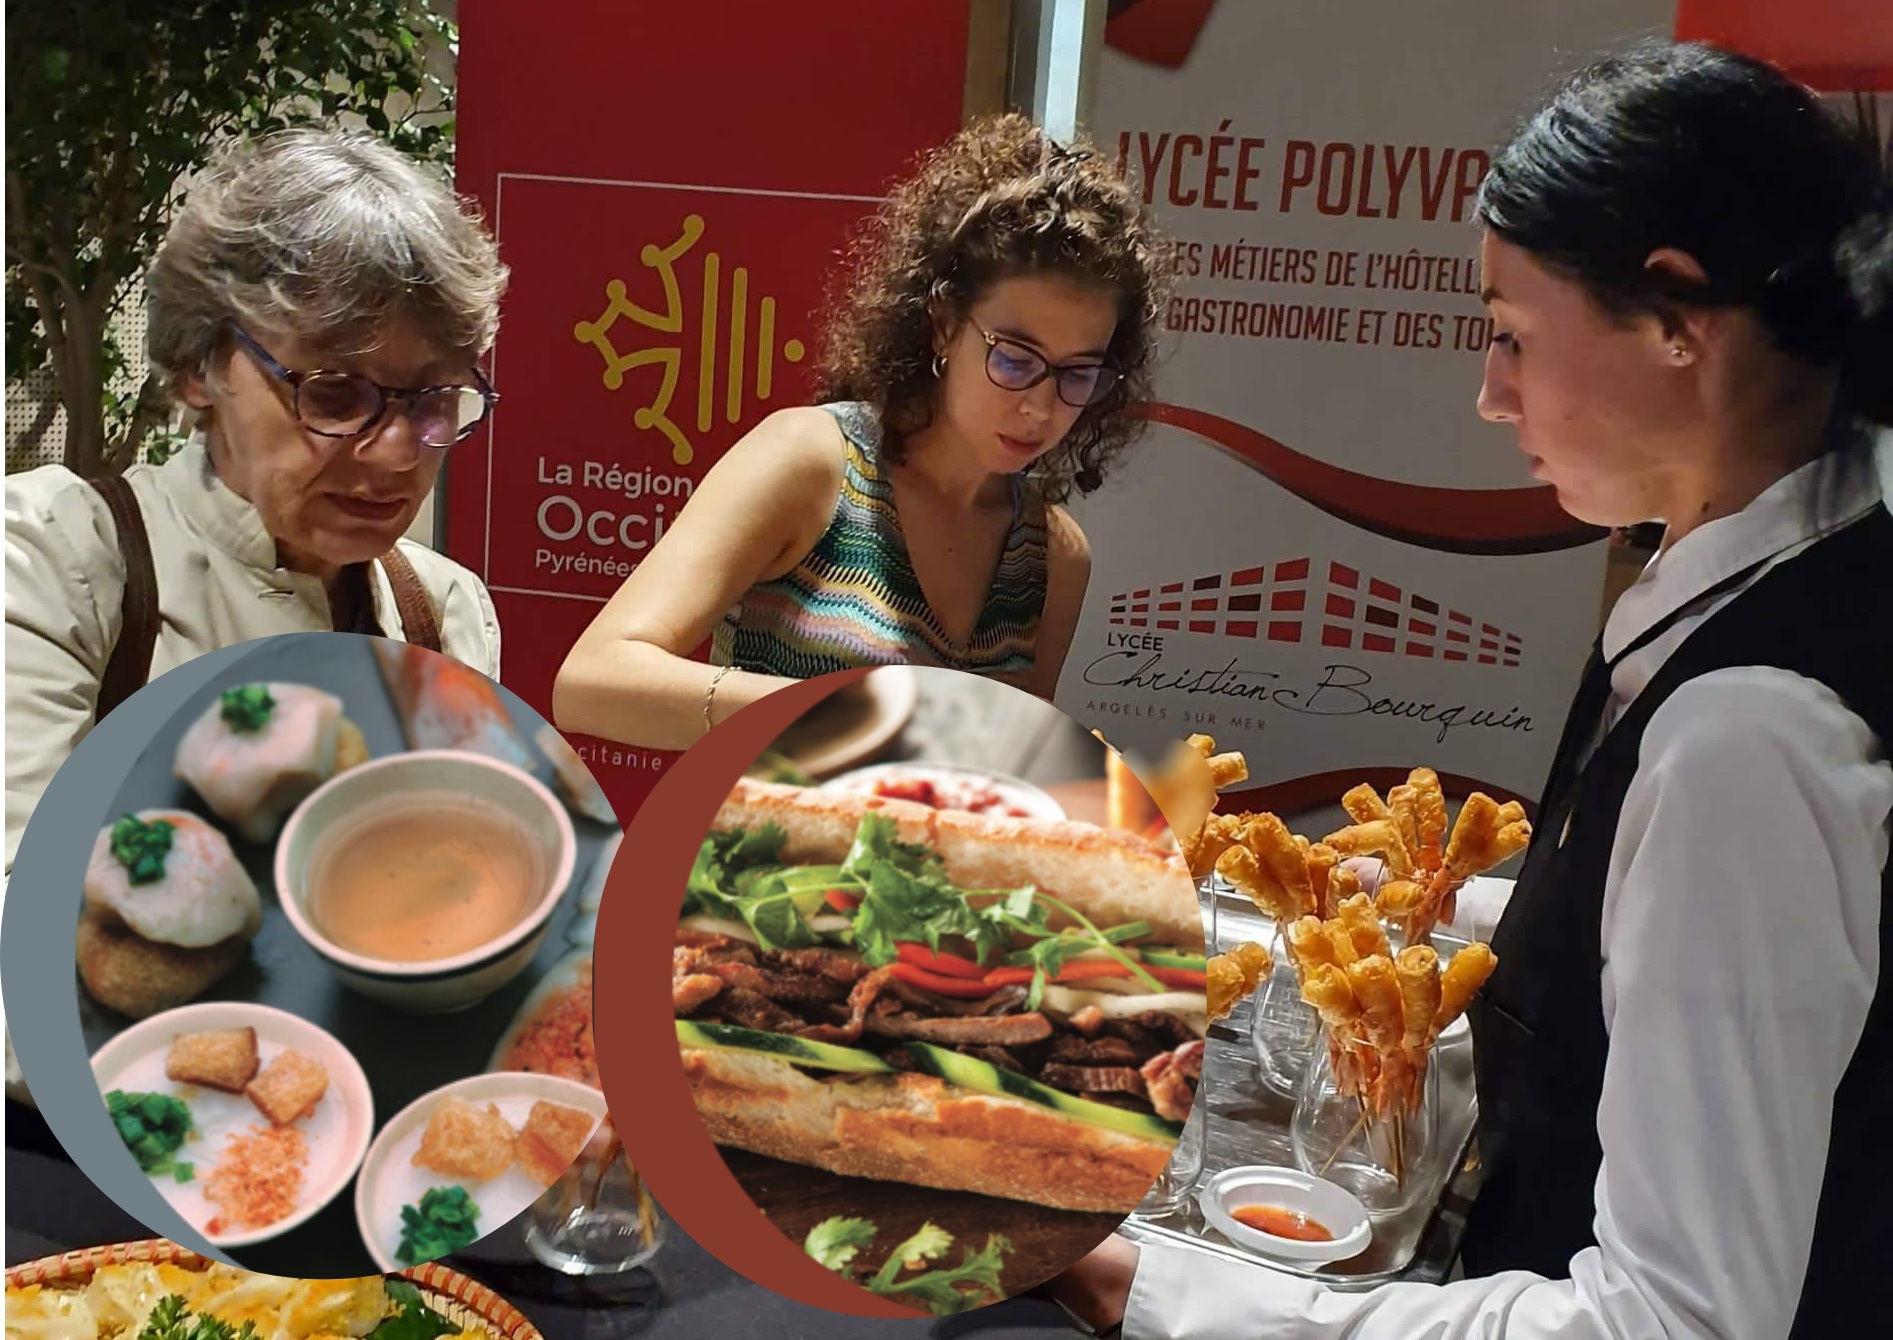 Bánh mì, nem rán, bánh ram ít Việt Nam thu hút thực khách ở Pháp